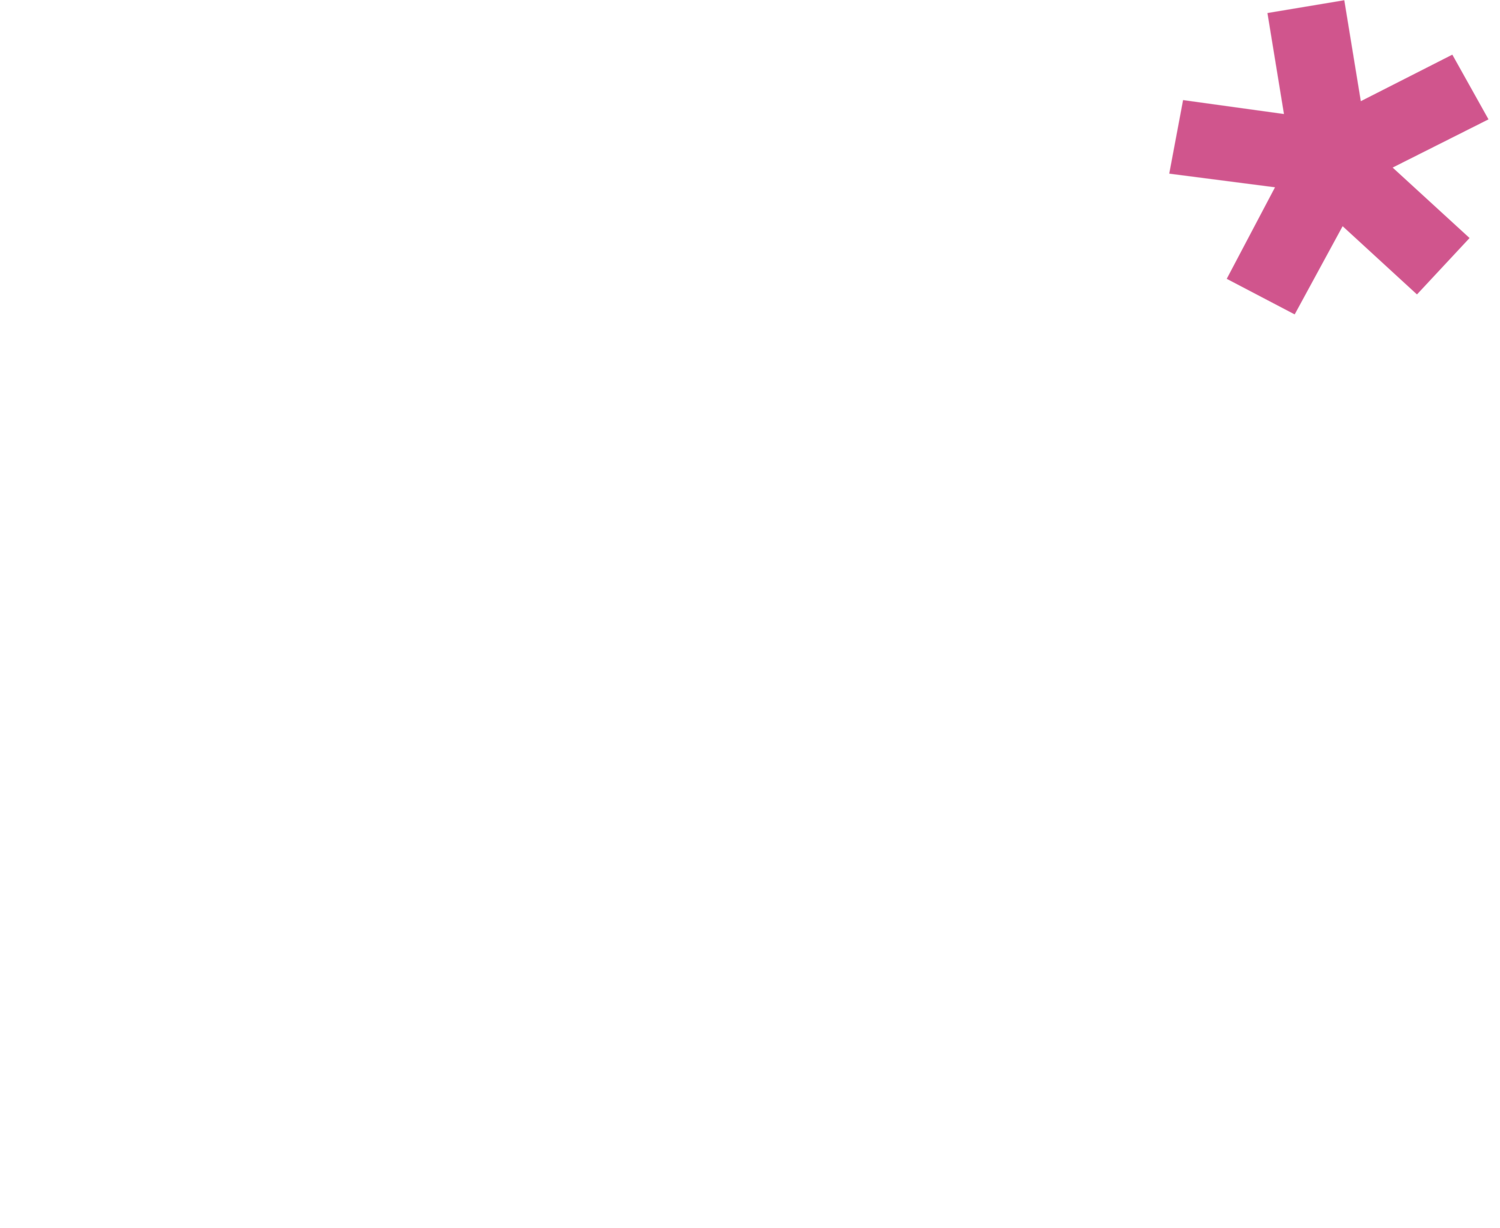 Firefly* Tapas Kitchen + Bar